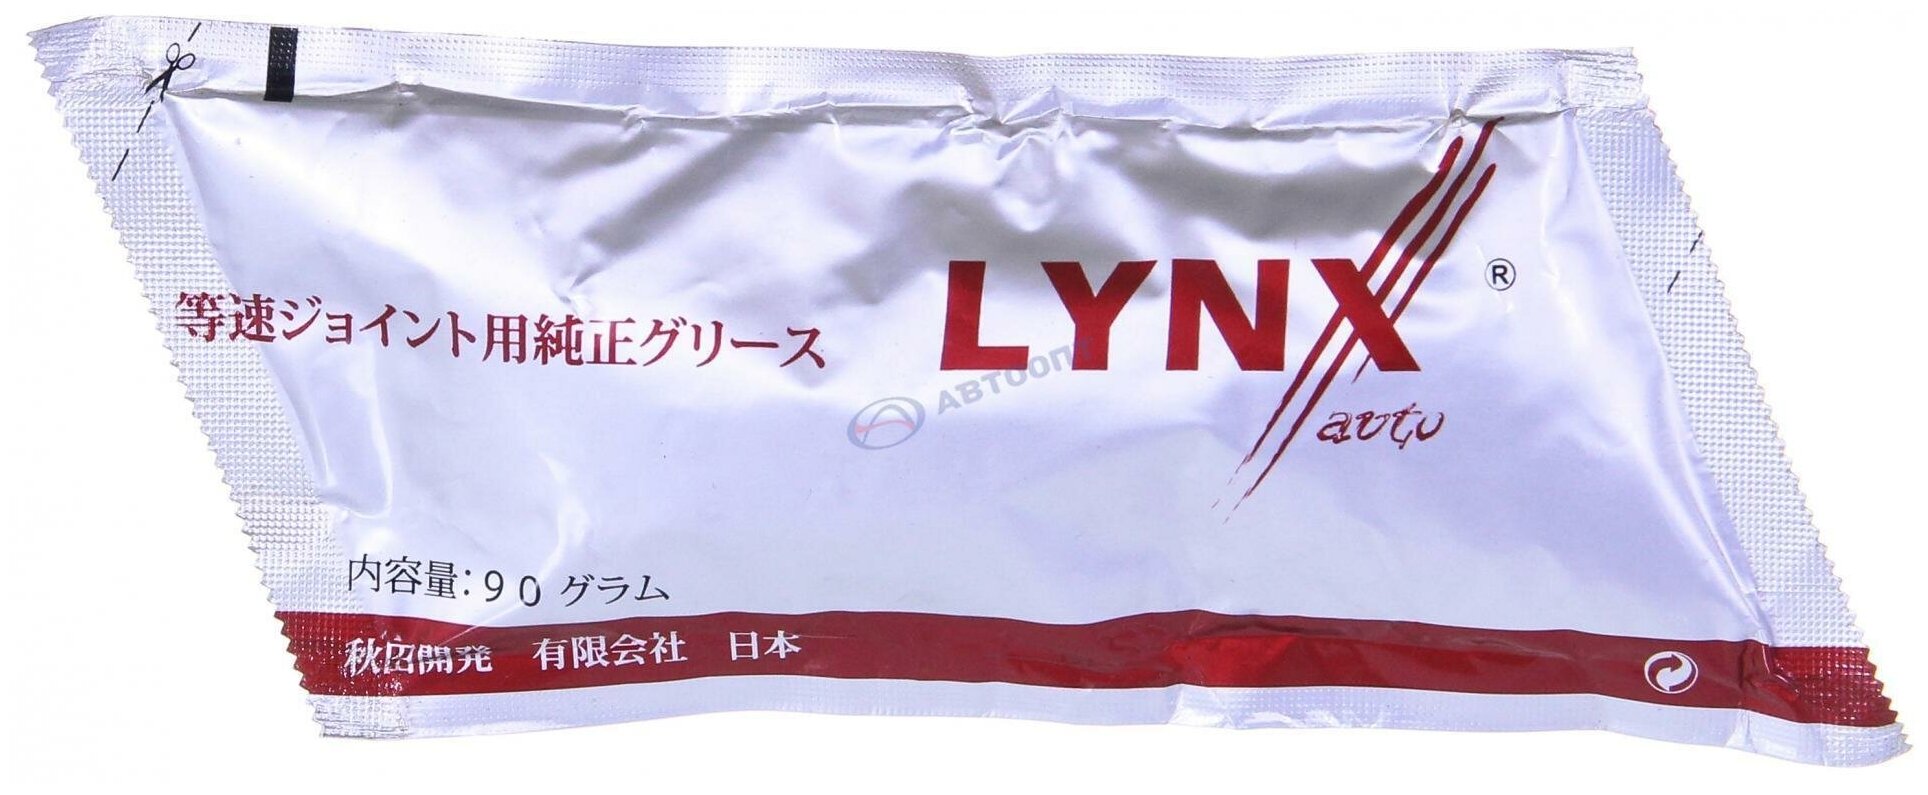 Смазка ШРУС 90 г CG1001 (GREASELYNX) "Lynx" (Япония)